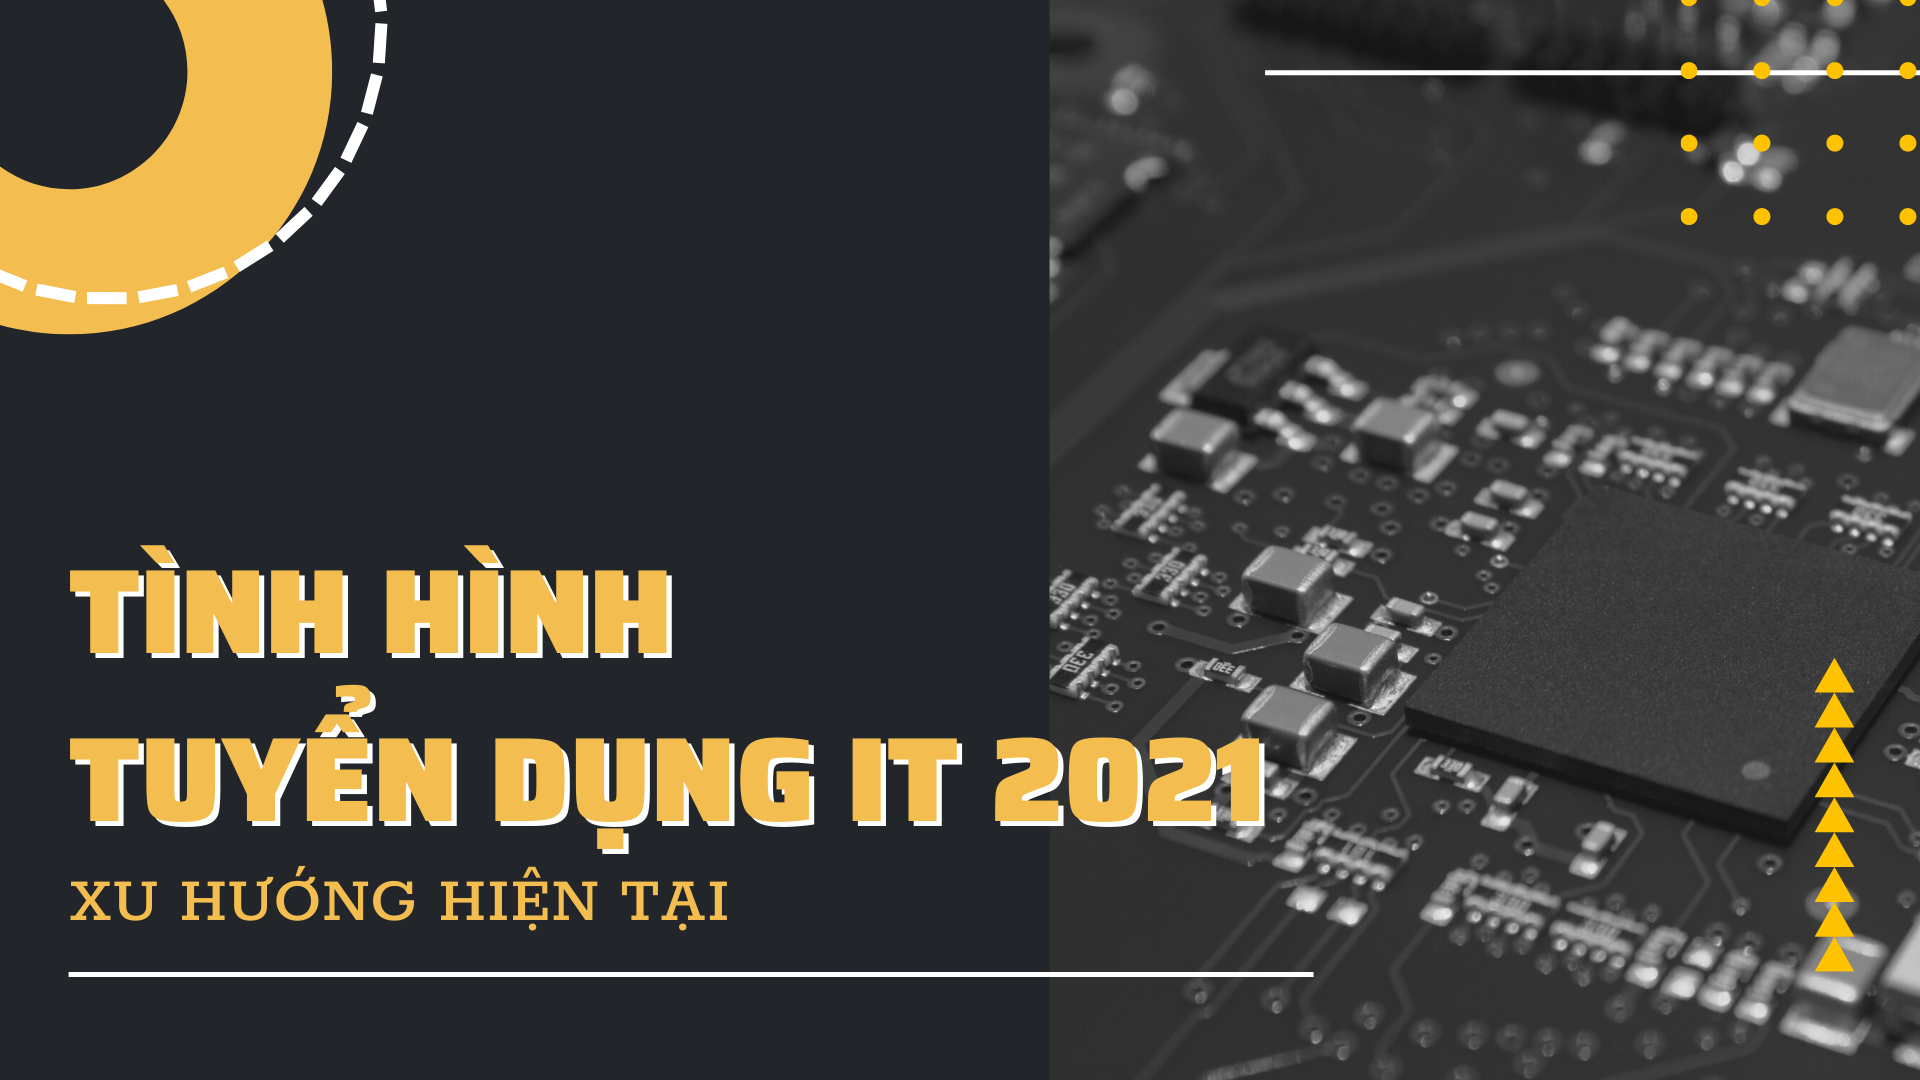 TINH-HINH-TUYEN-DUNG-IT-2021